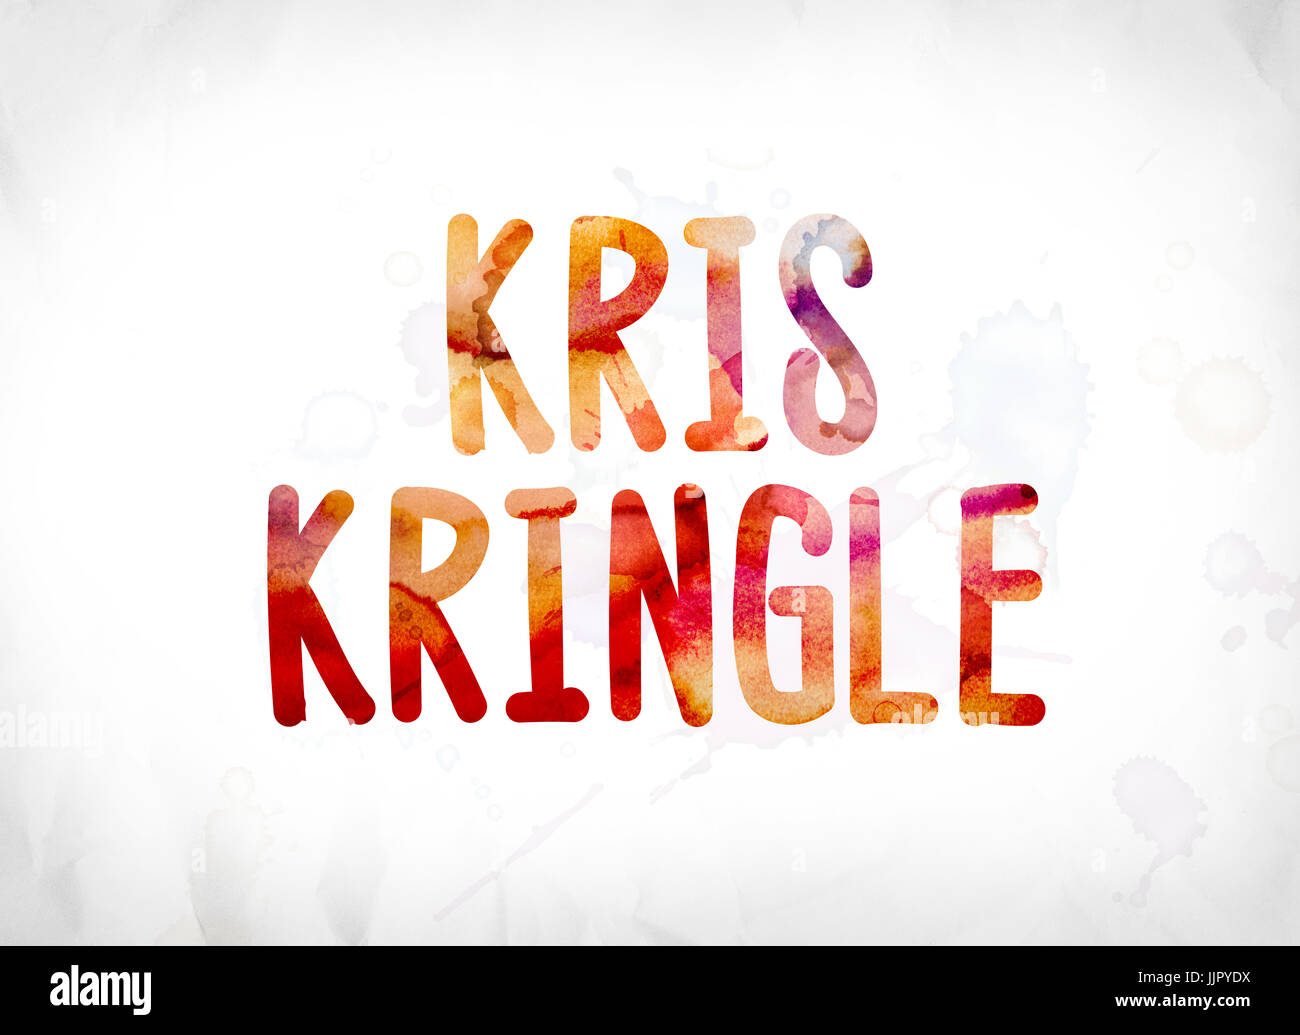 Der Name Kris Kringle Konzept und Thema in bunte Aquarelle auf weißem Papierhintergrund gemalt. Stockfoto